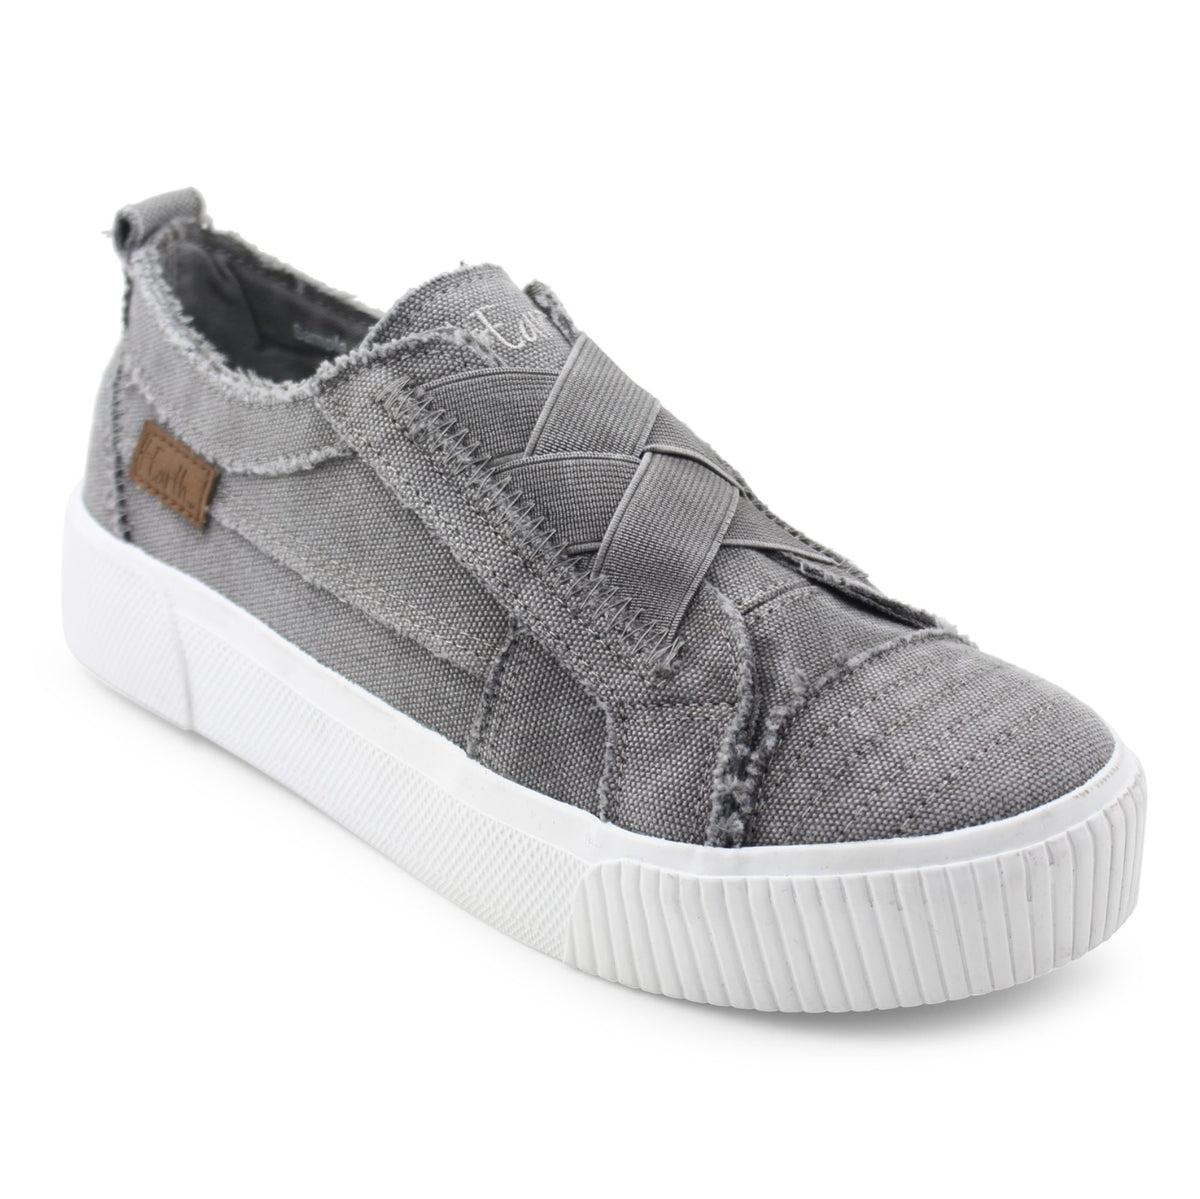 Create Slip-On Sneakers - Steel Gray